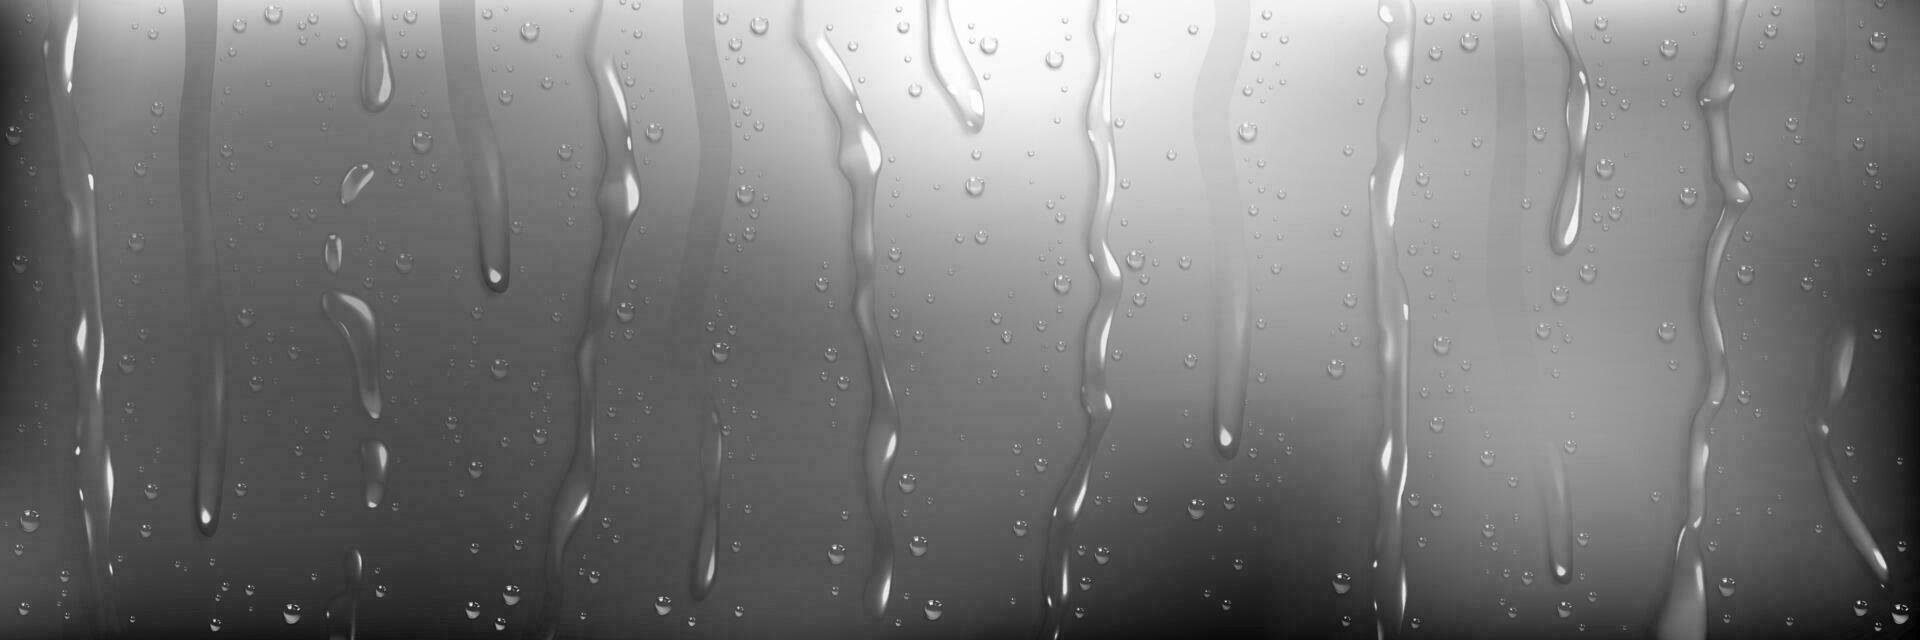 Regen Wasser Tropfen auf nass Fenster Glas vektor